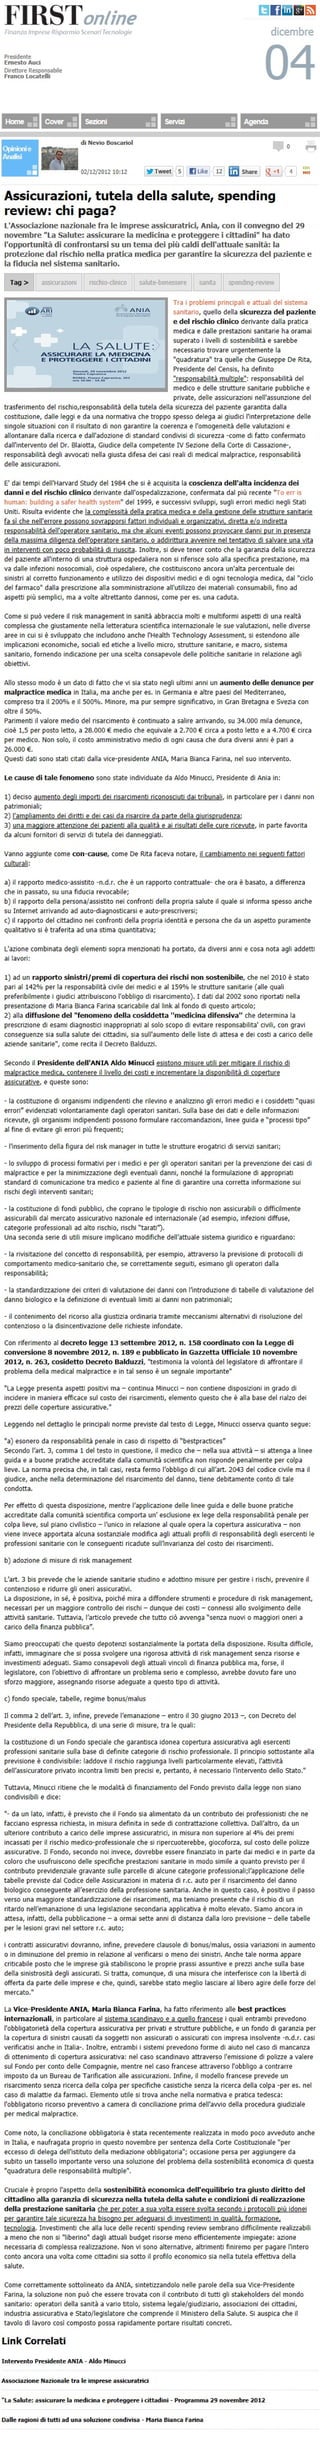 Assicurazioni_tutela-della-salute_spending-review_chi_paga_nevio boscariol_firstonline_ 4 dicembre 2012